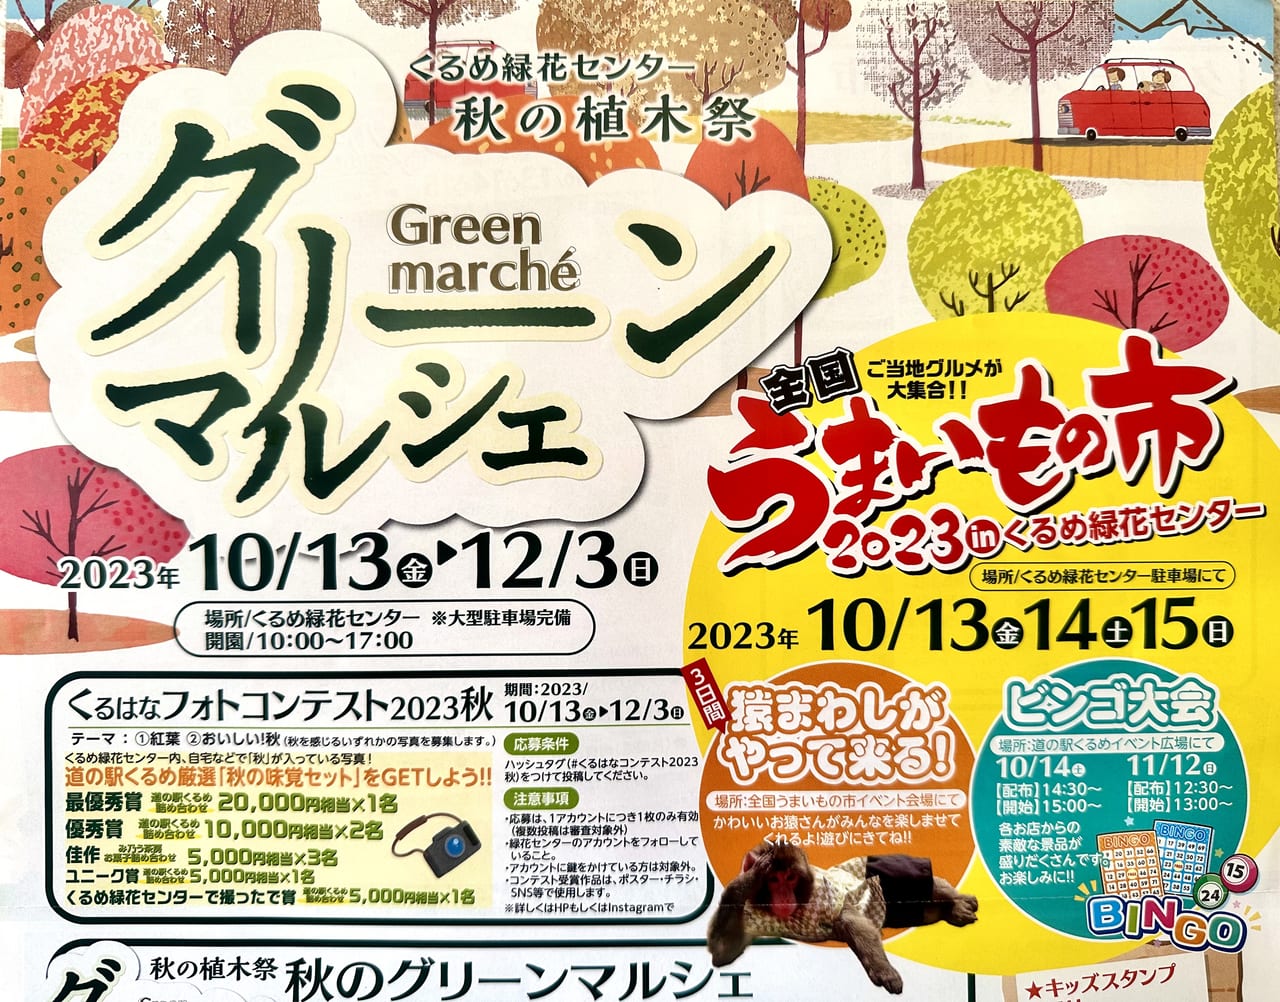 2023年秋の植木祭「グリーンマルシェ」